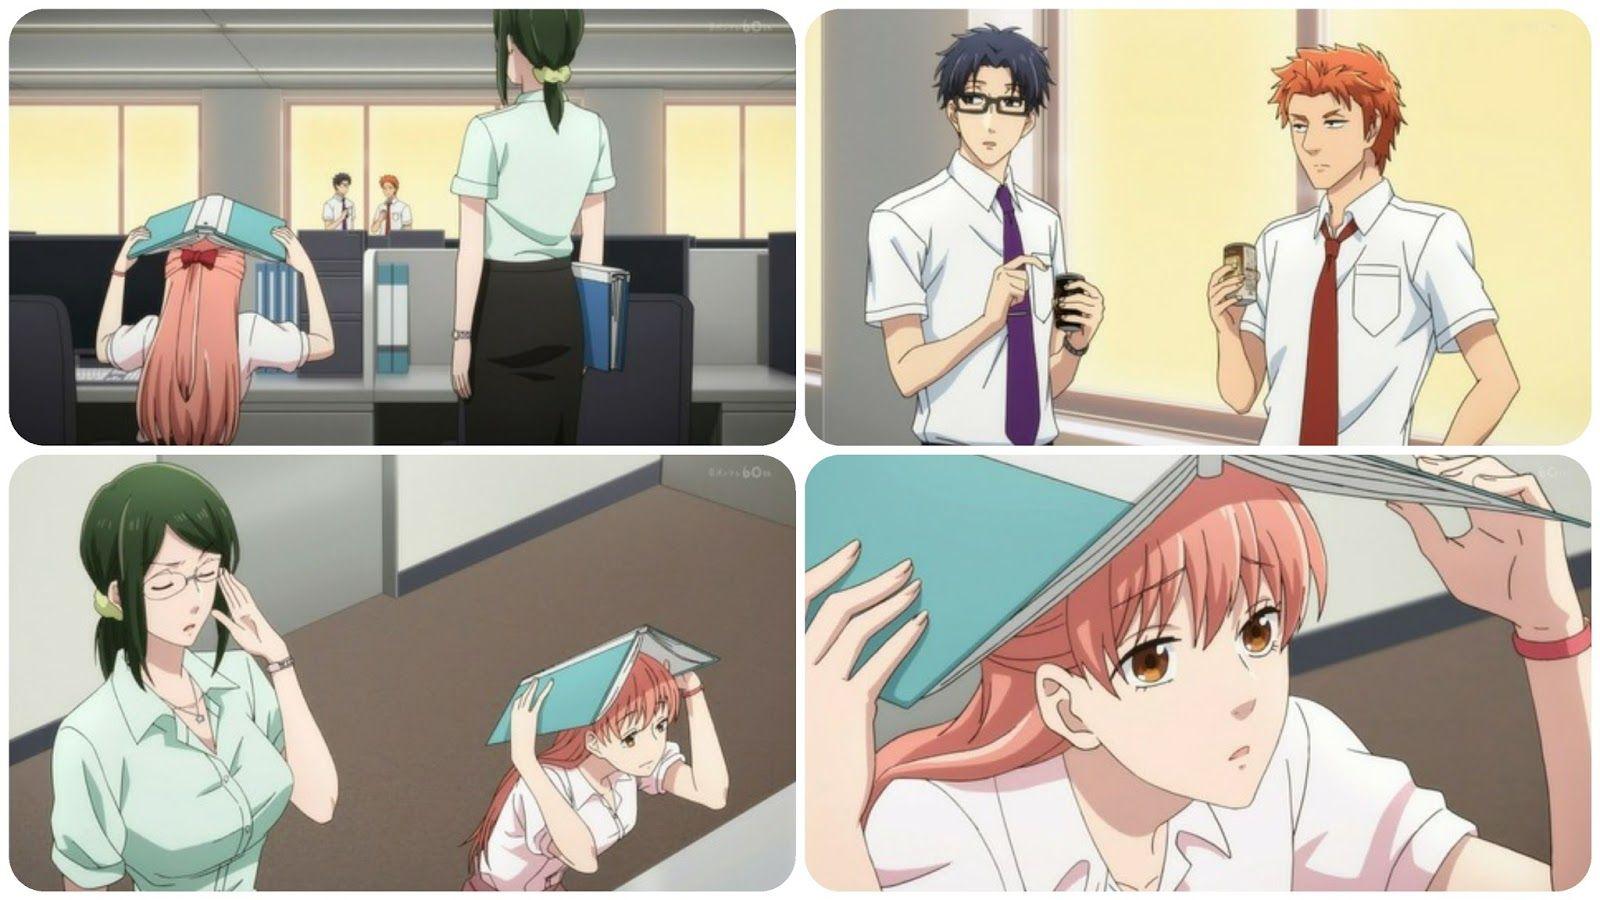 Anime Nikki: [Wotakoi: Love is Hard for Otaku] Episode 2 impressions